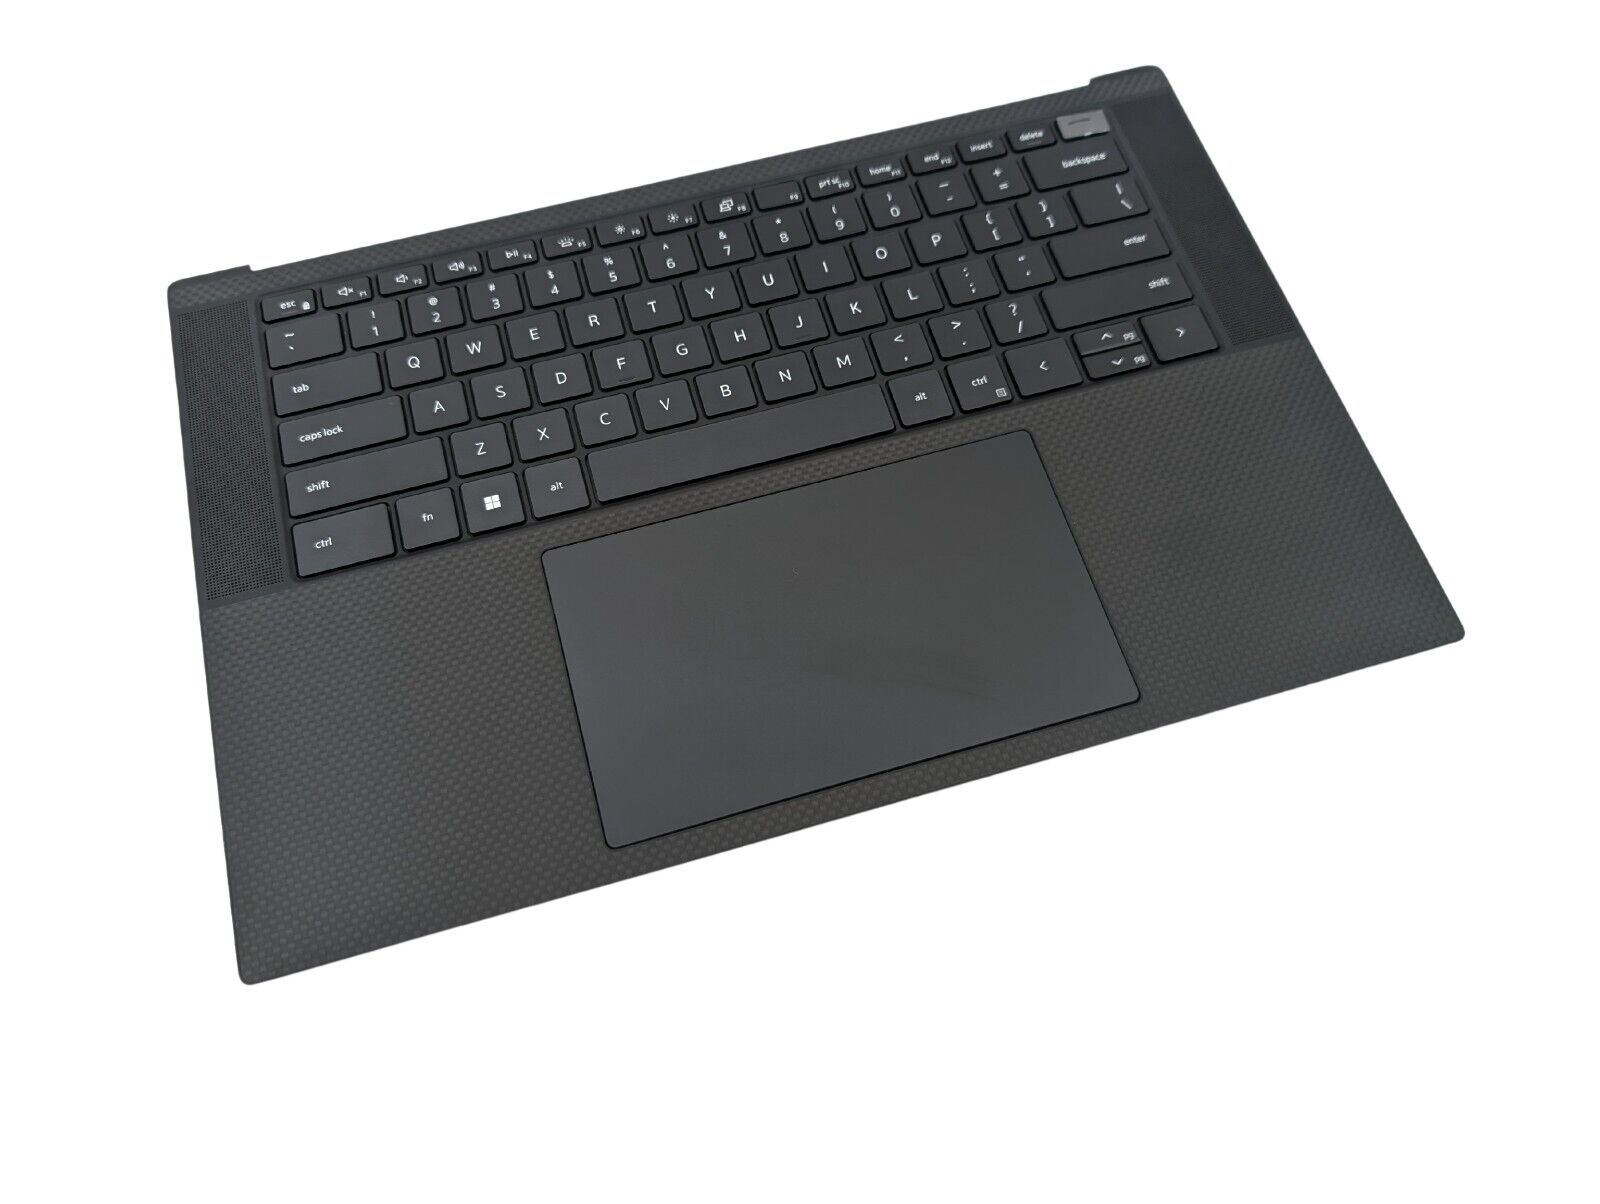 NEW OEM Dell XPS 15 9500 Touchpad Palmrest Backlit INTL Keyboard - 6JV4G 06JV4G